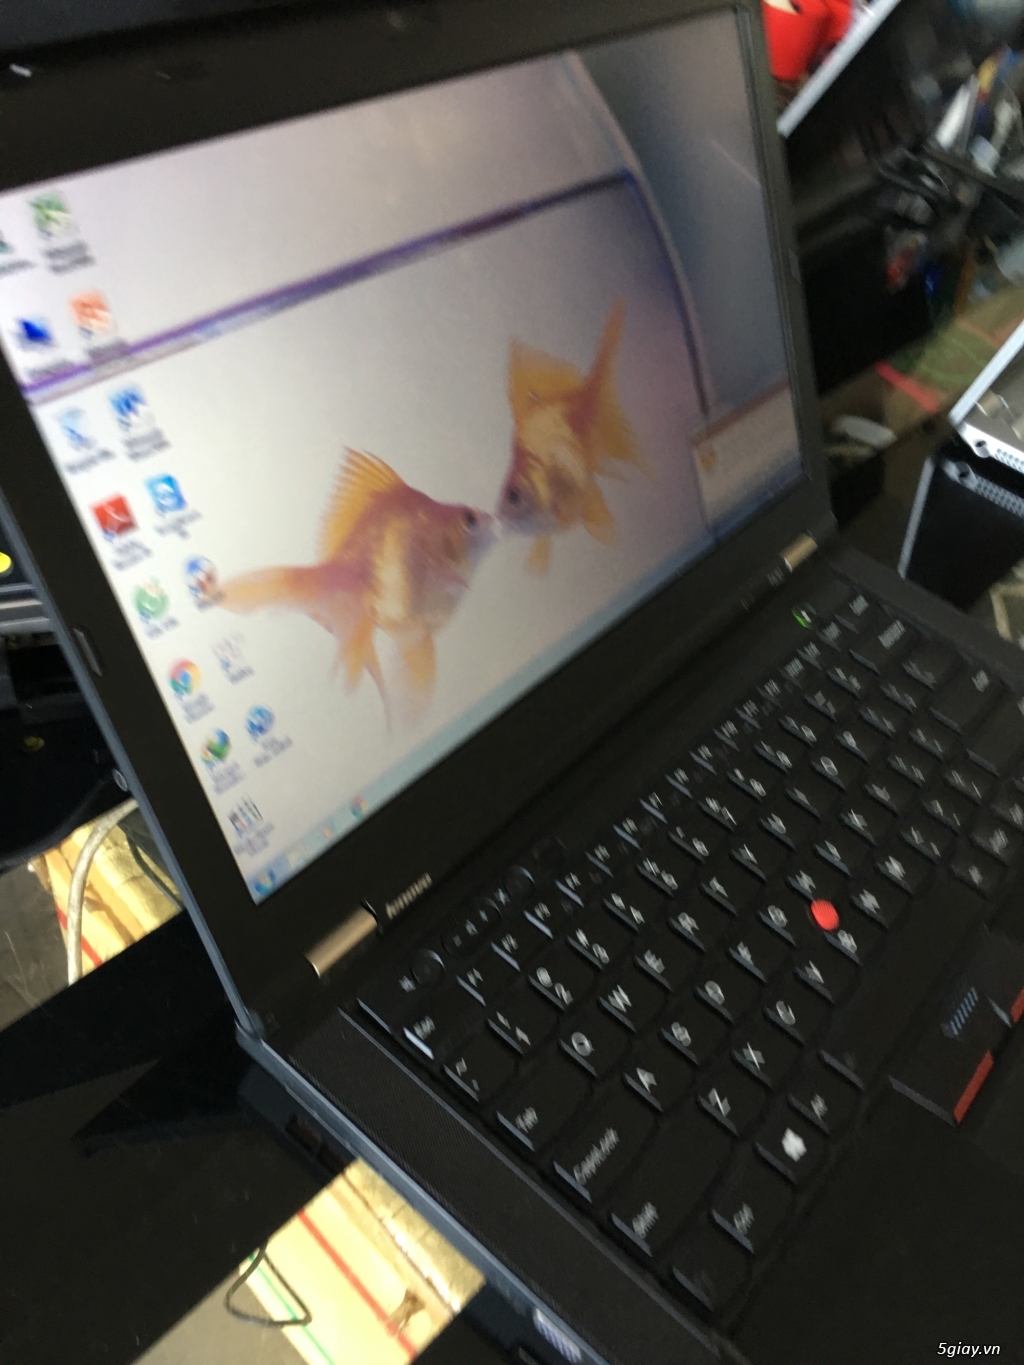 ThinkPad T430 Like New i5 3320M Ram 4G HDD 320G, siêu bền đẹp - 1